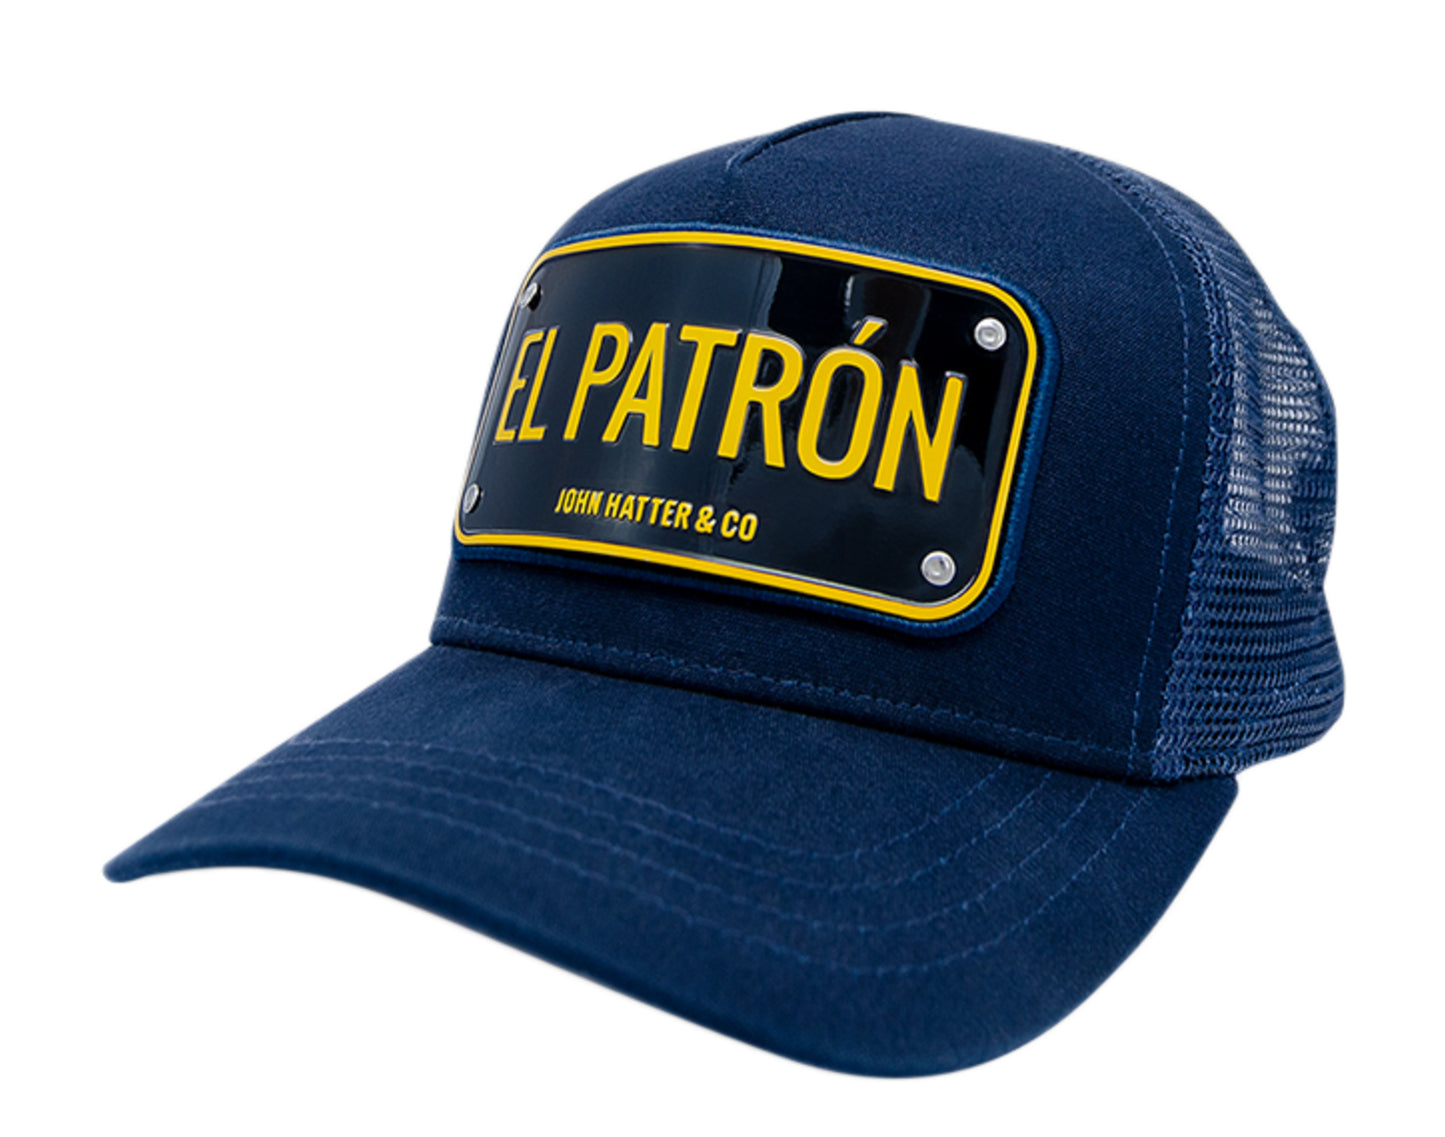 John Hatter & Co El Patron Trucker Hat